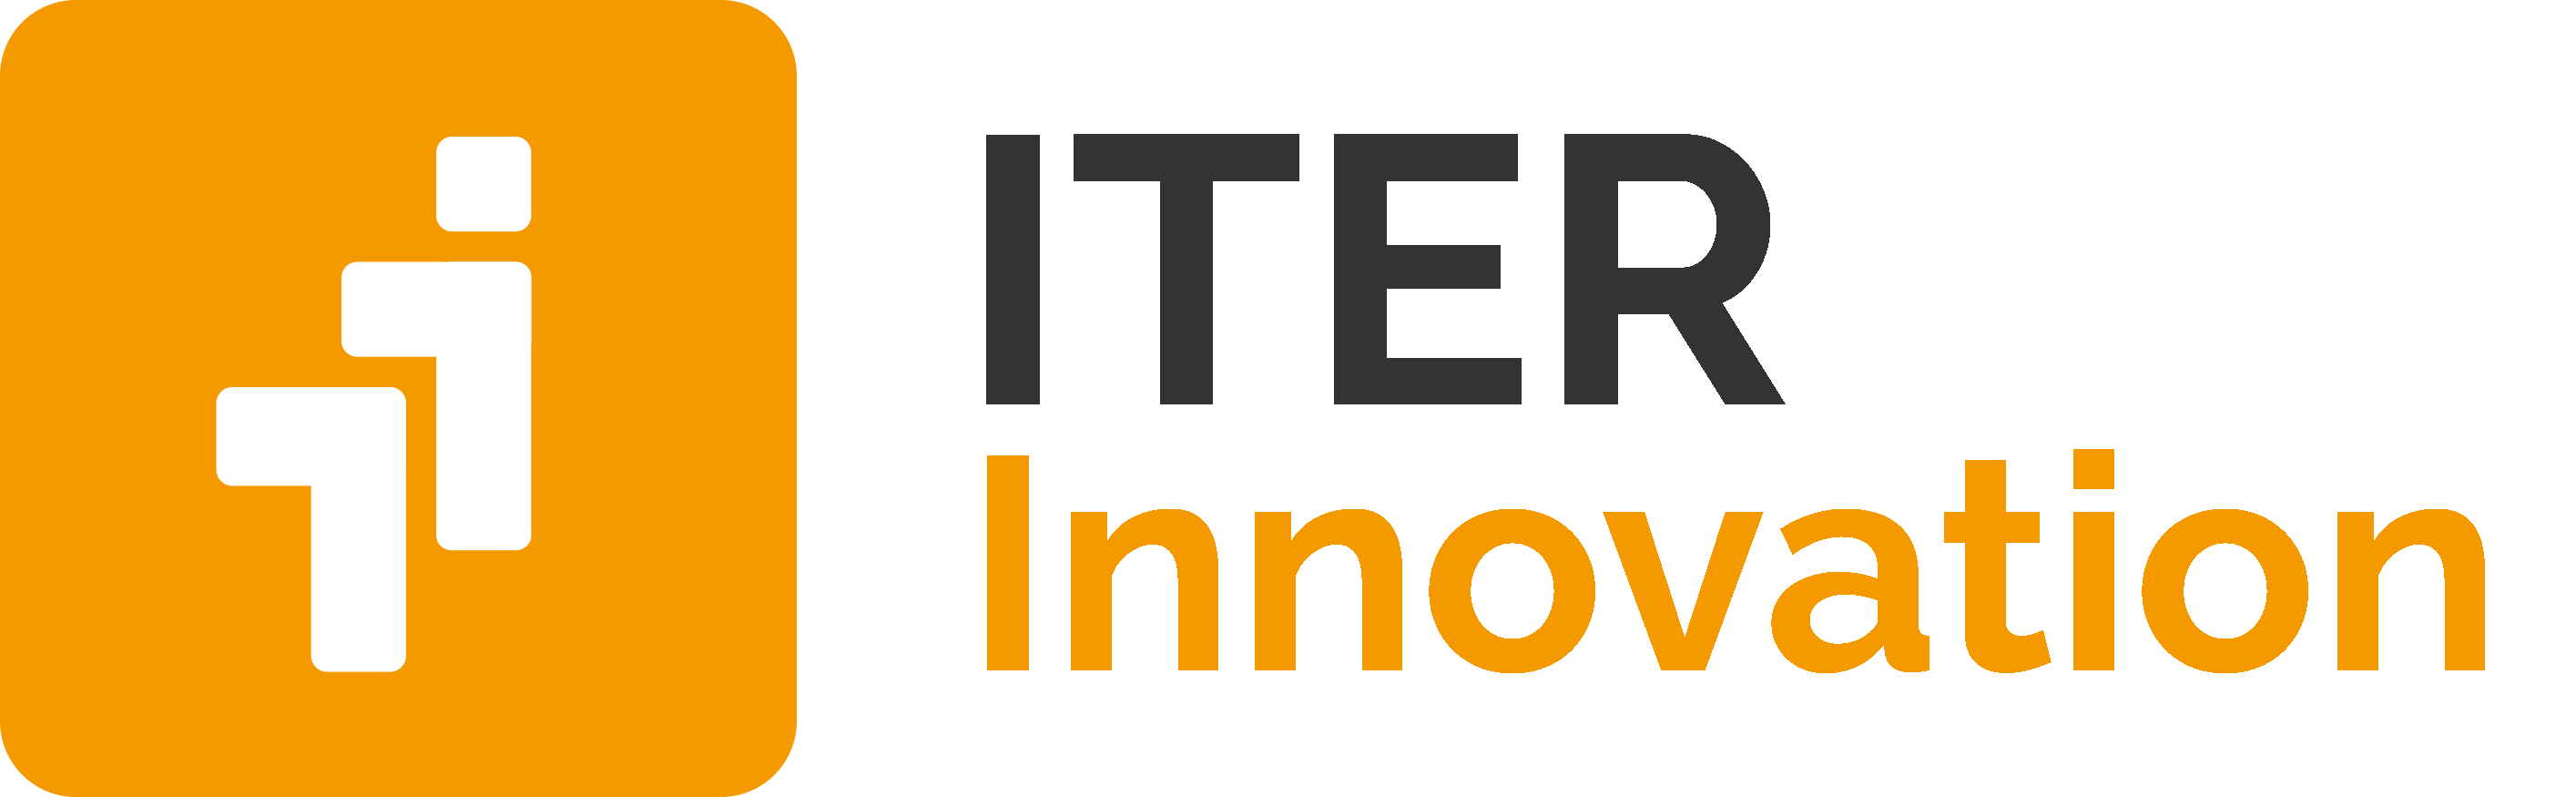 iter-innovation-partner-zucchetti-logo